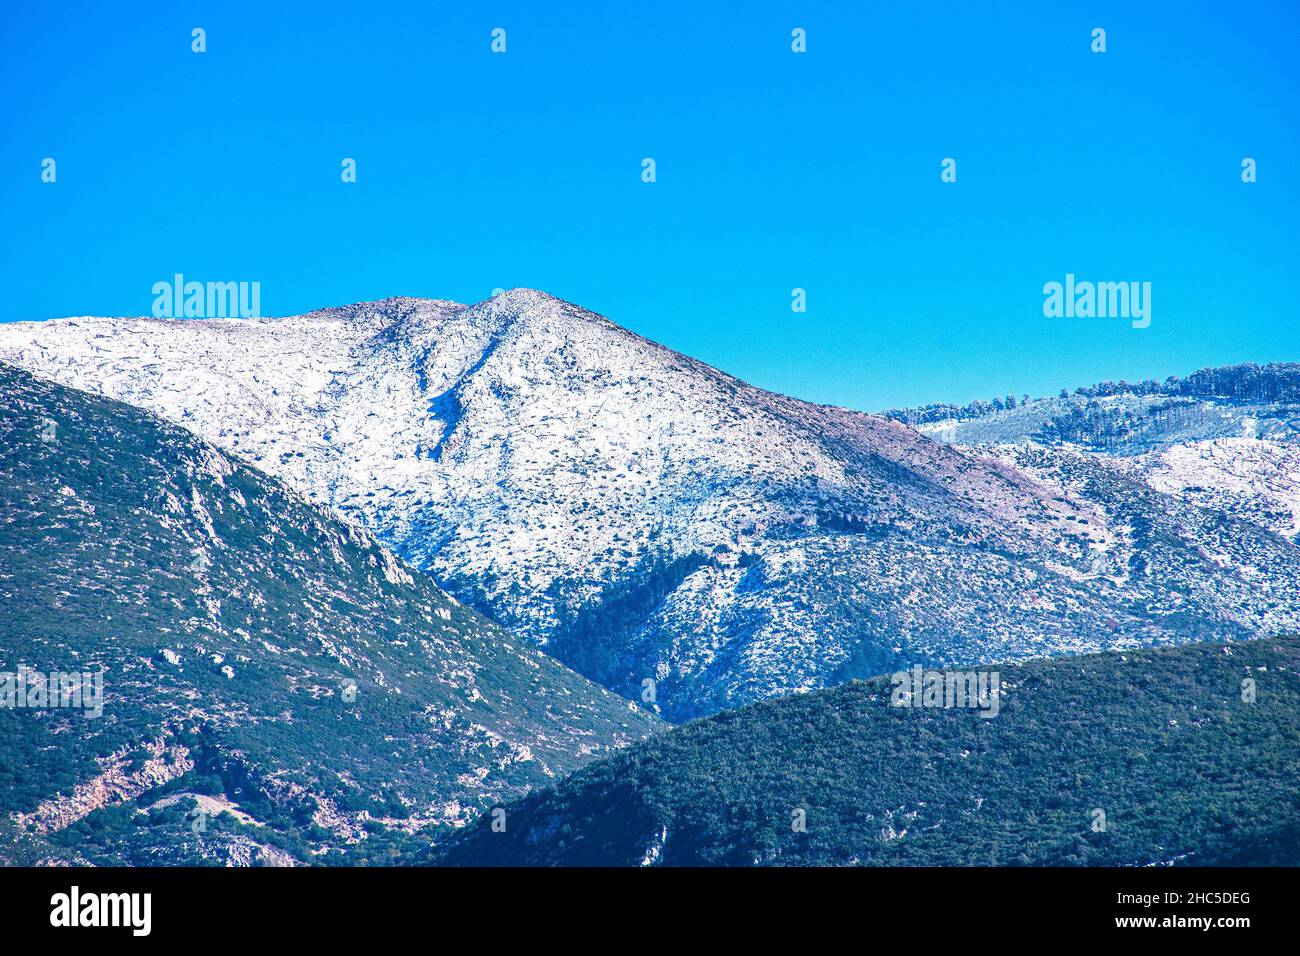 Vista panoramica della foresta innevata nella montagna di Taygetus (conosciuta anche come Taaugetus o Taygetos) nella Grecia Peloponneso. Foto Stock